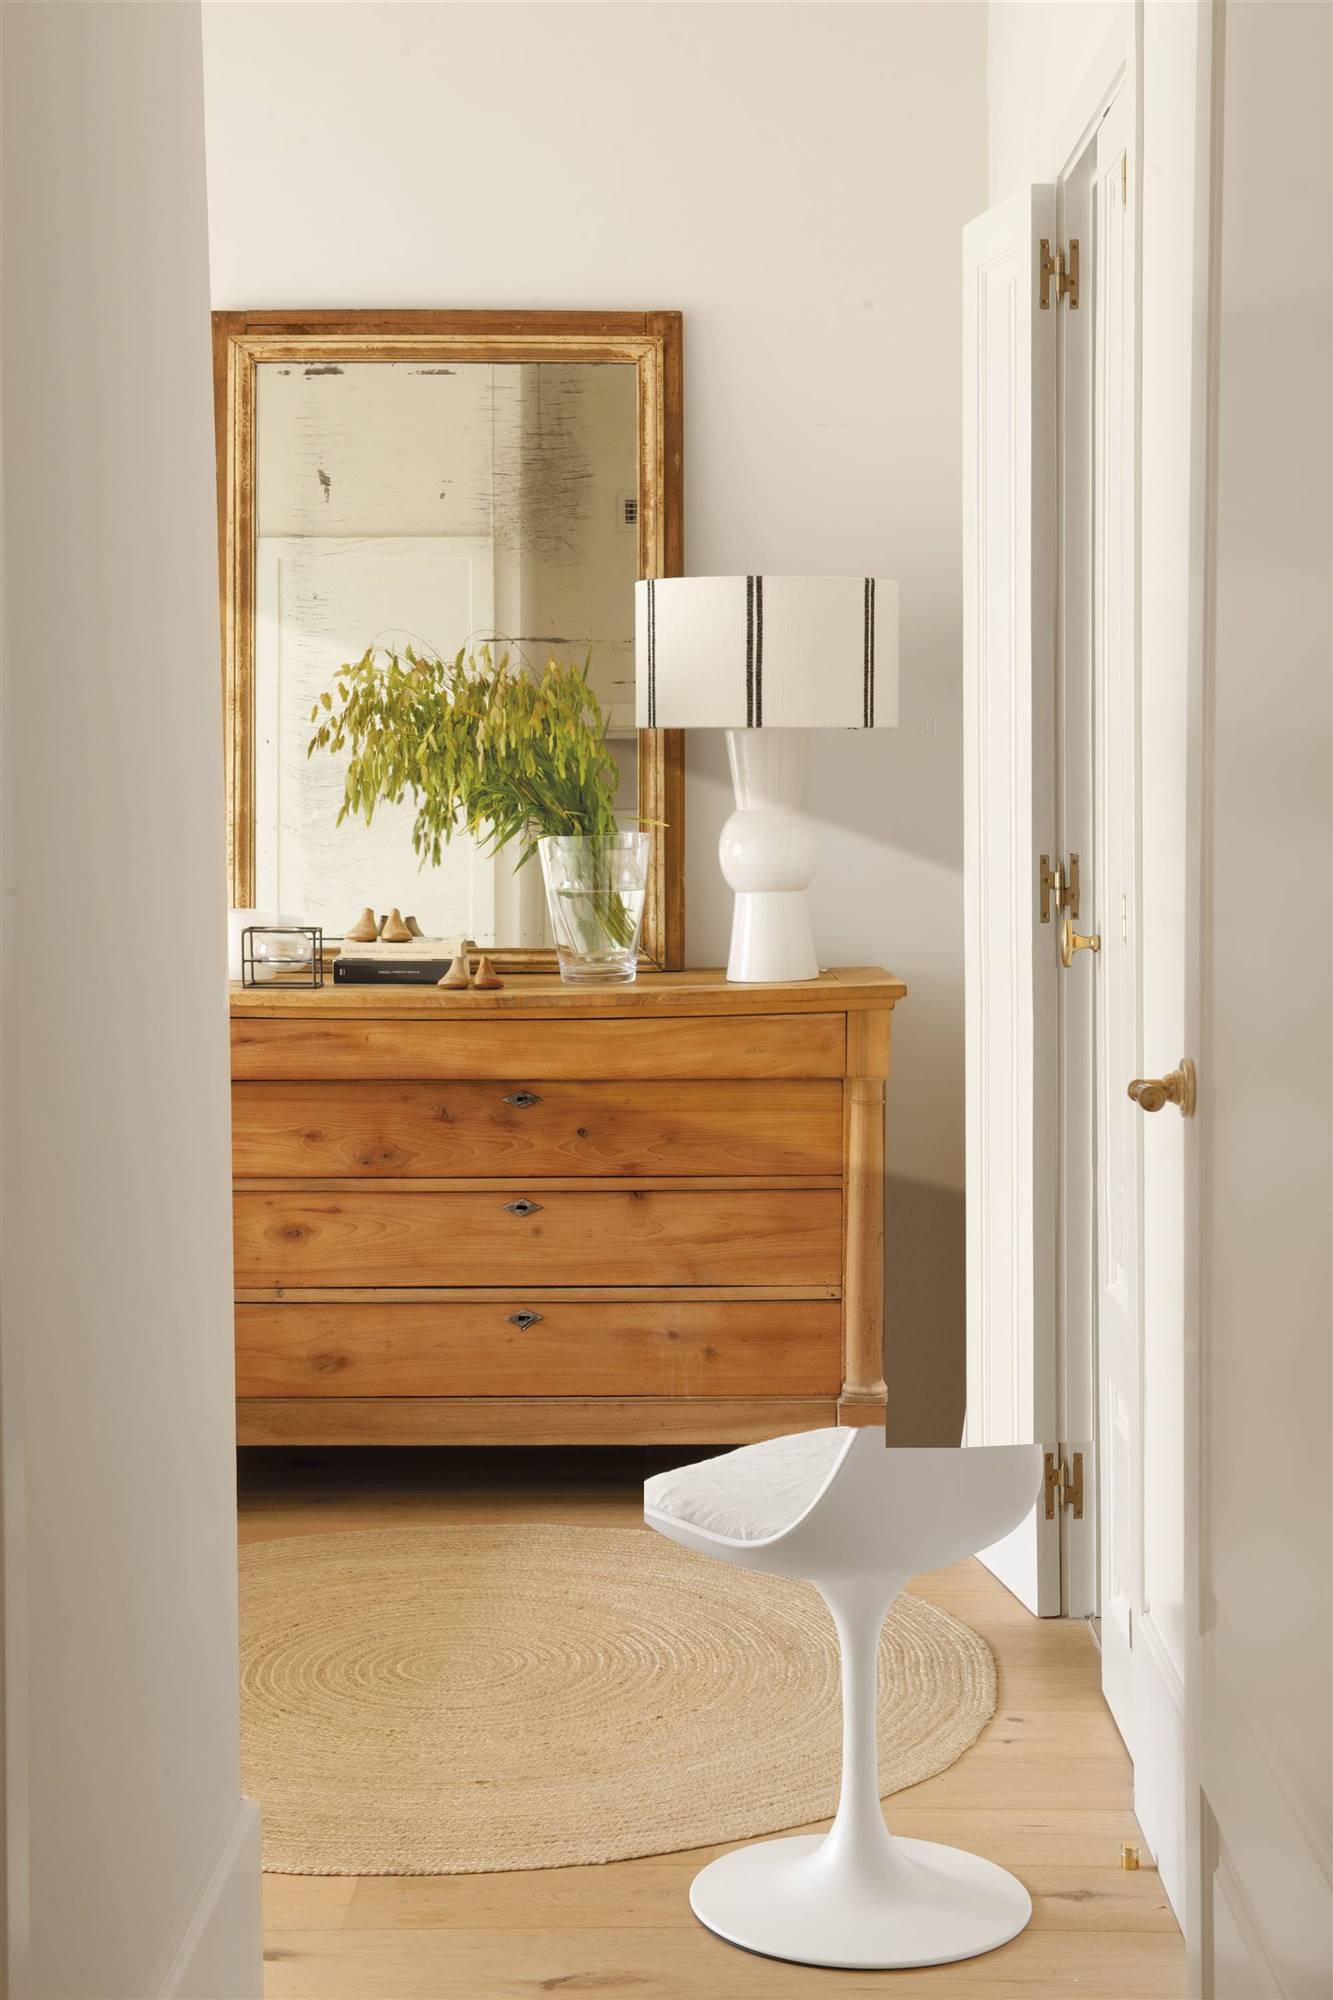 Cómoda con espejo antiguo encima y silla blanca moderna. 